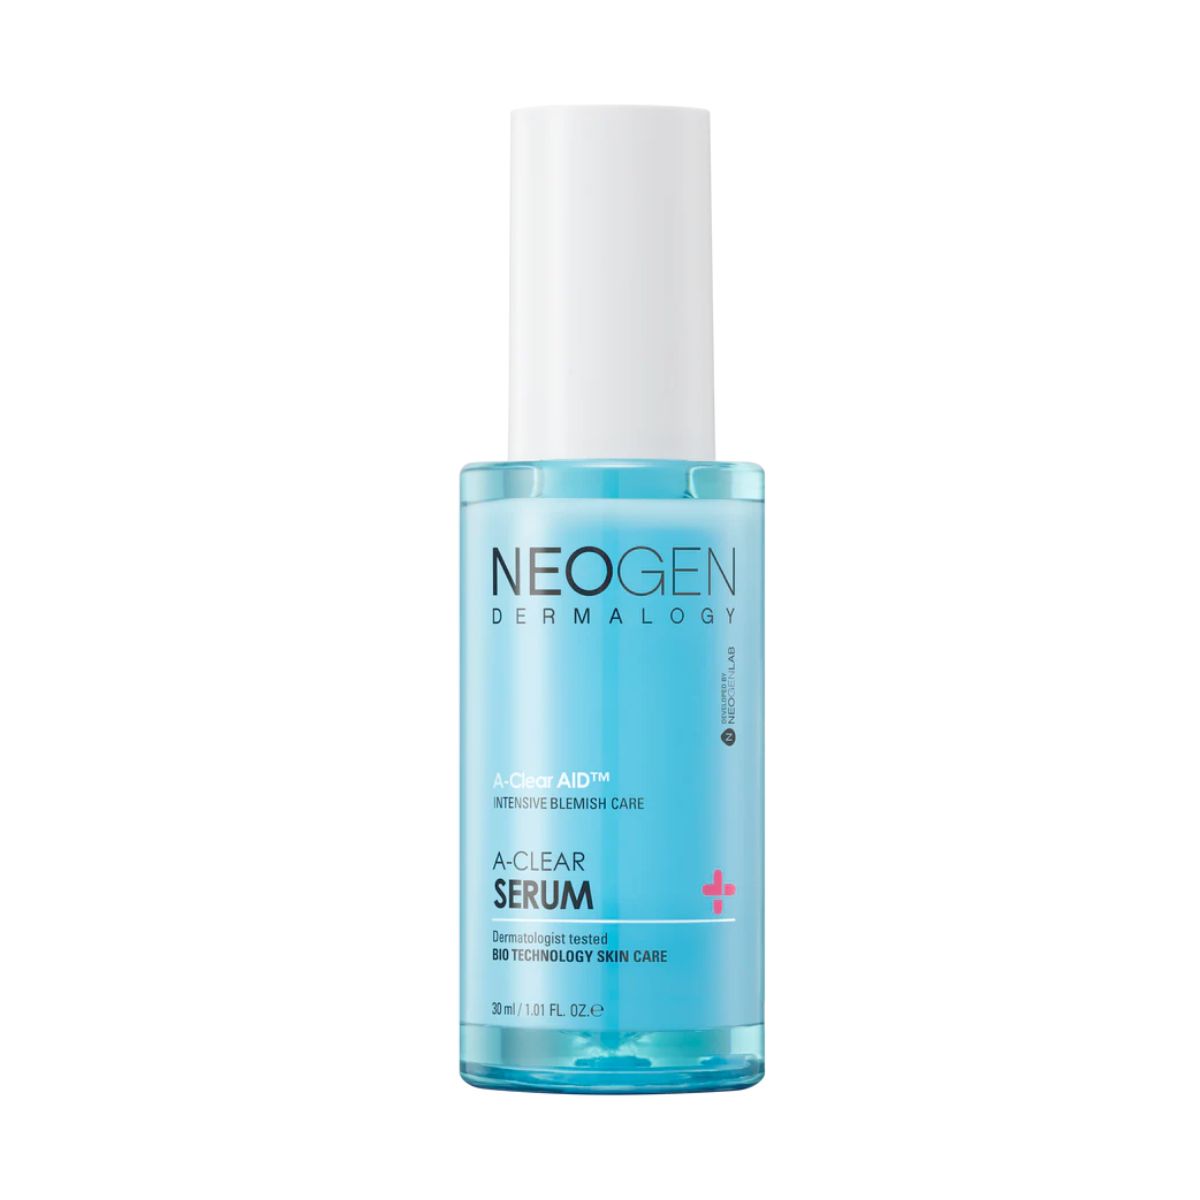 NEOGEN A-CLEAR SERUM 30ml / 1.01 FL.OZ - skin care